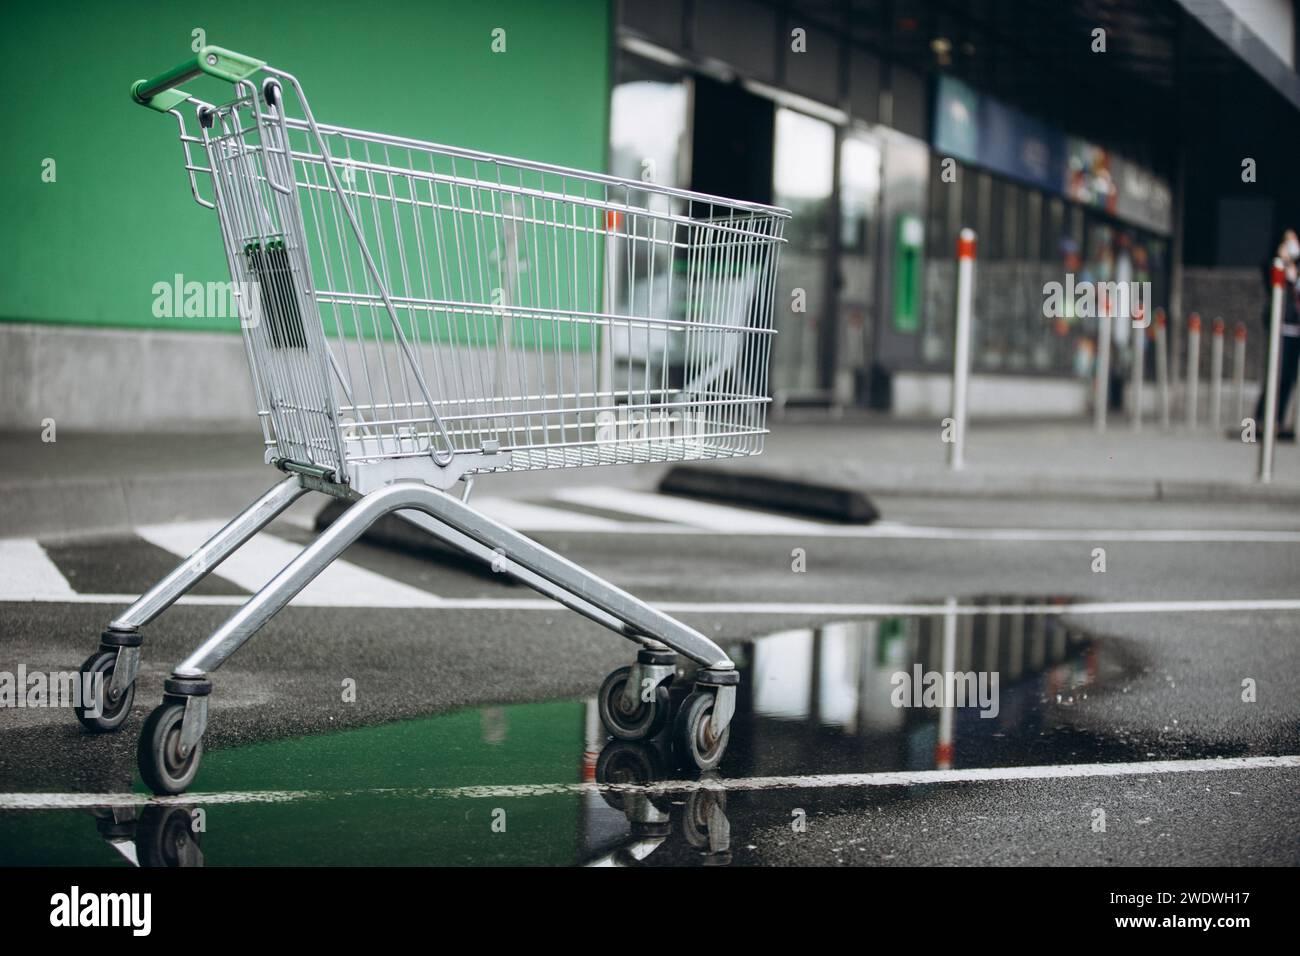 un cestino del supermercato è sull'asvalt e una pozza d'acqua, una sedia a rotelle. Foto di alta qualità Foto Stock